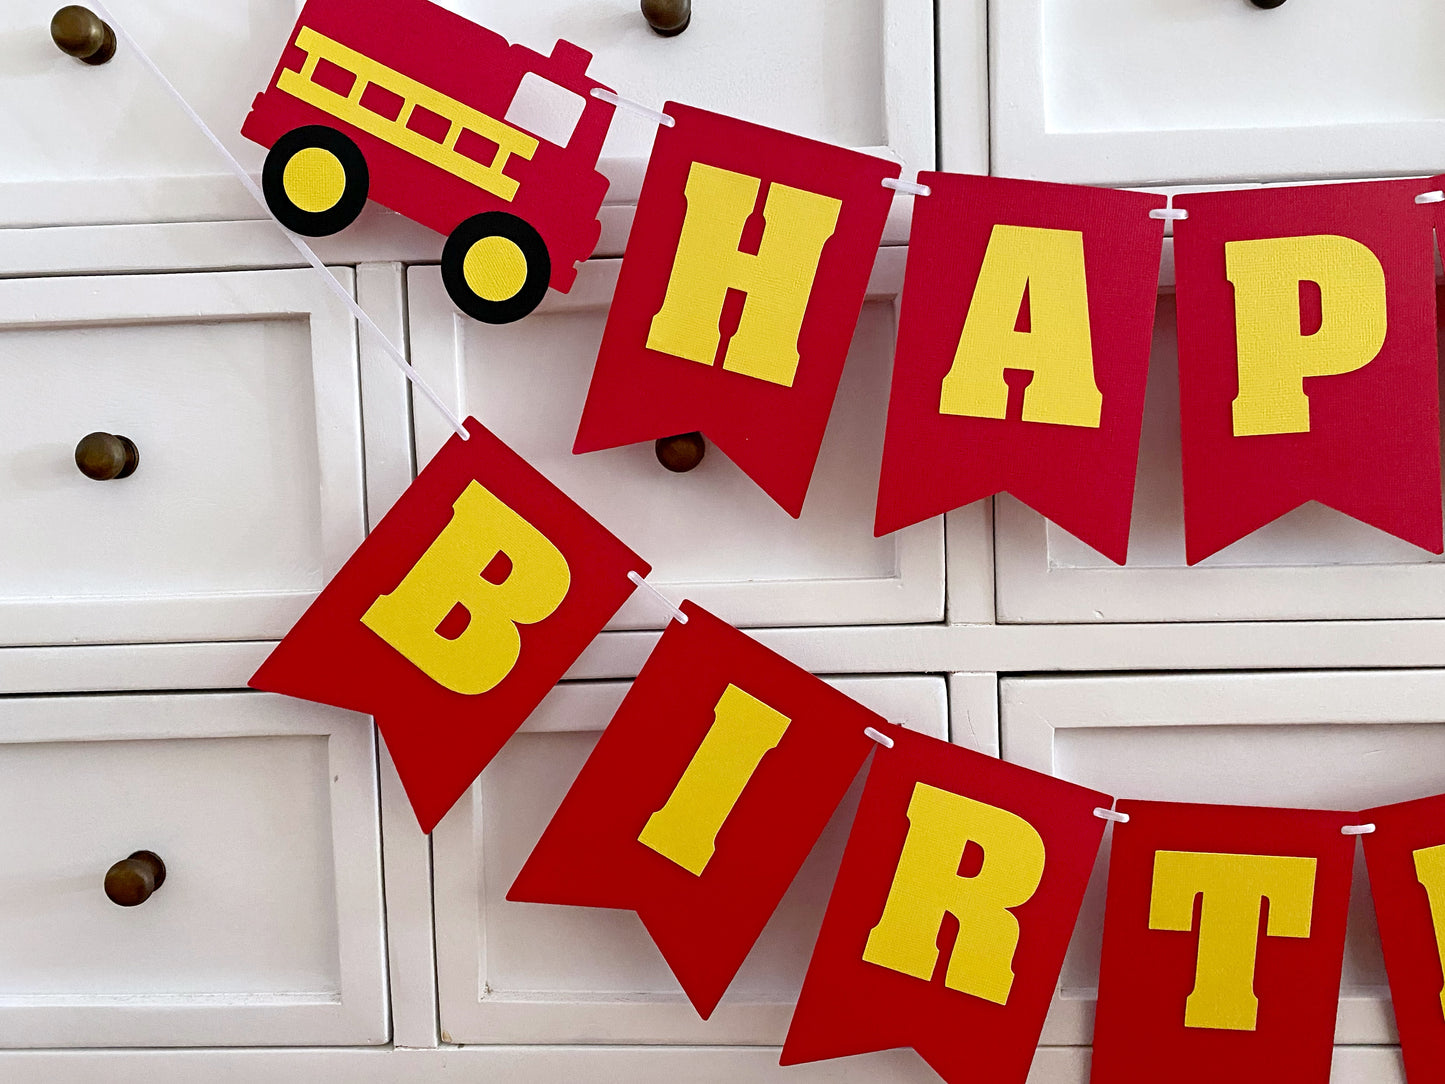 Fire Truck Happy Birthday banner